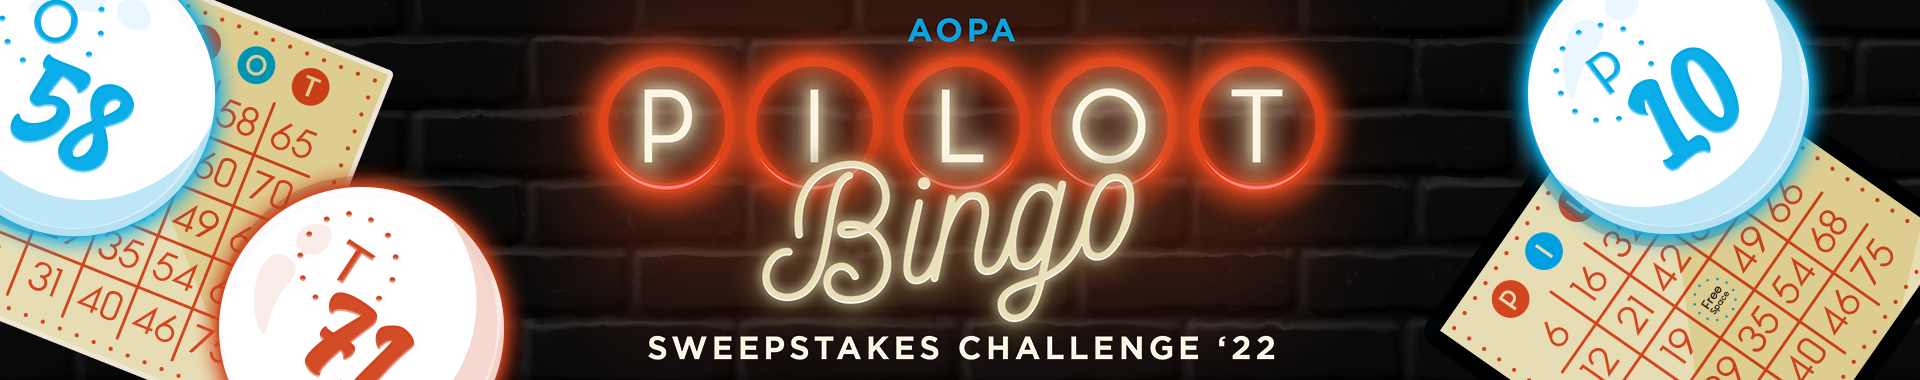 Pilot Bingo Challenge | AOPA Pilot Passport Badges & Challenges